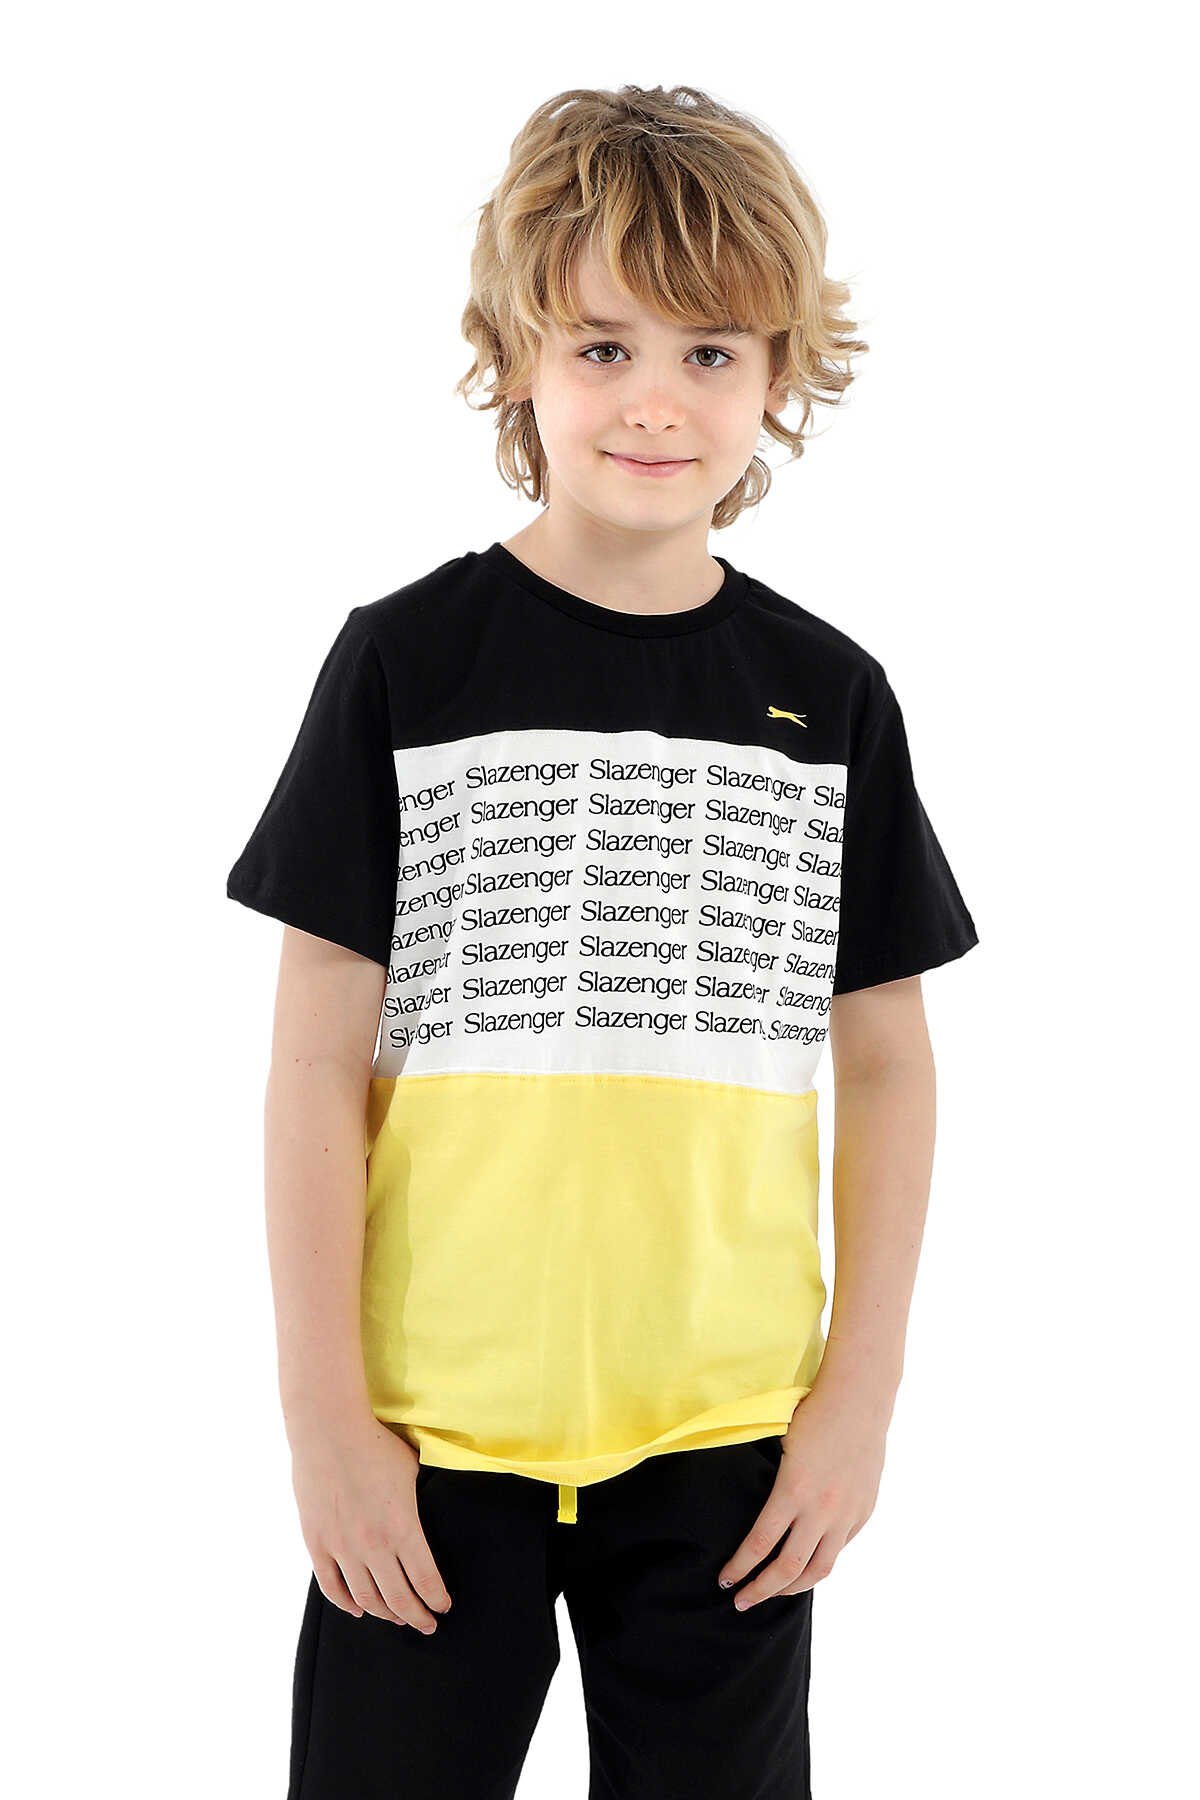 Slazenger - Slazenger PARS Erkek Çocuk Kısa Kol T-Shirt Siyah / Sarı